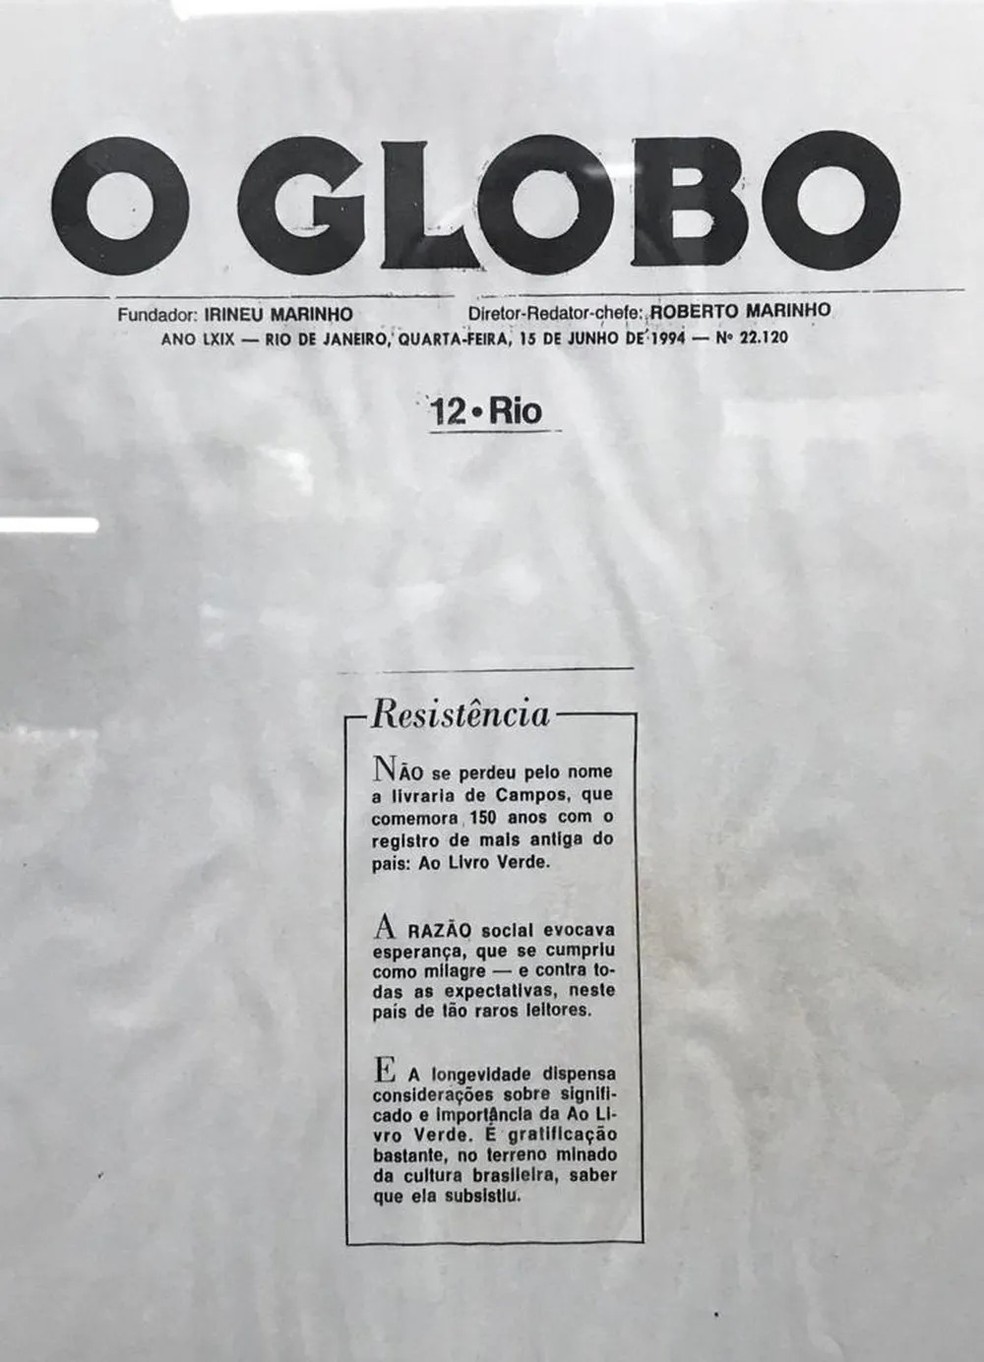 O Globo destaca resistência da livraria aos 150 anos — Foto: Reprodução